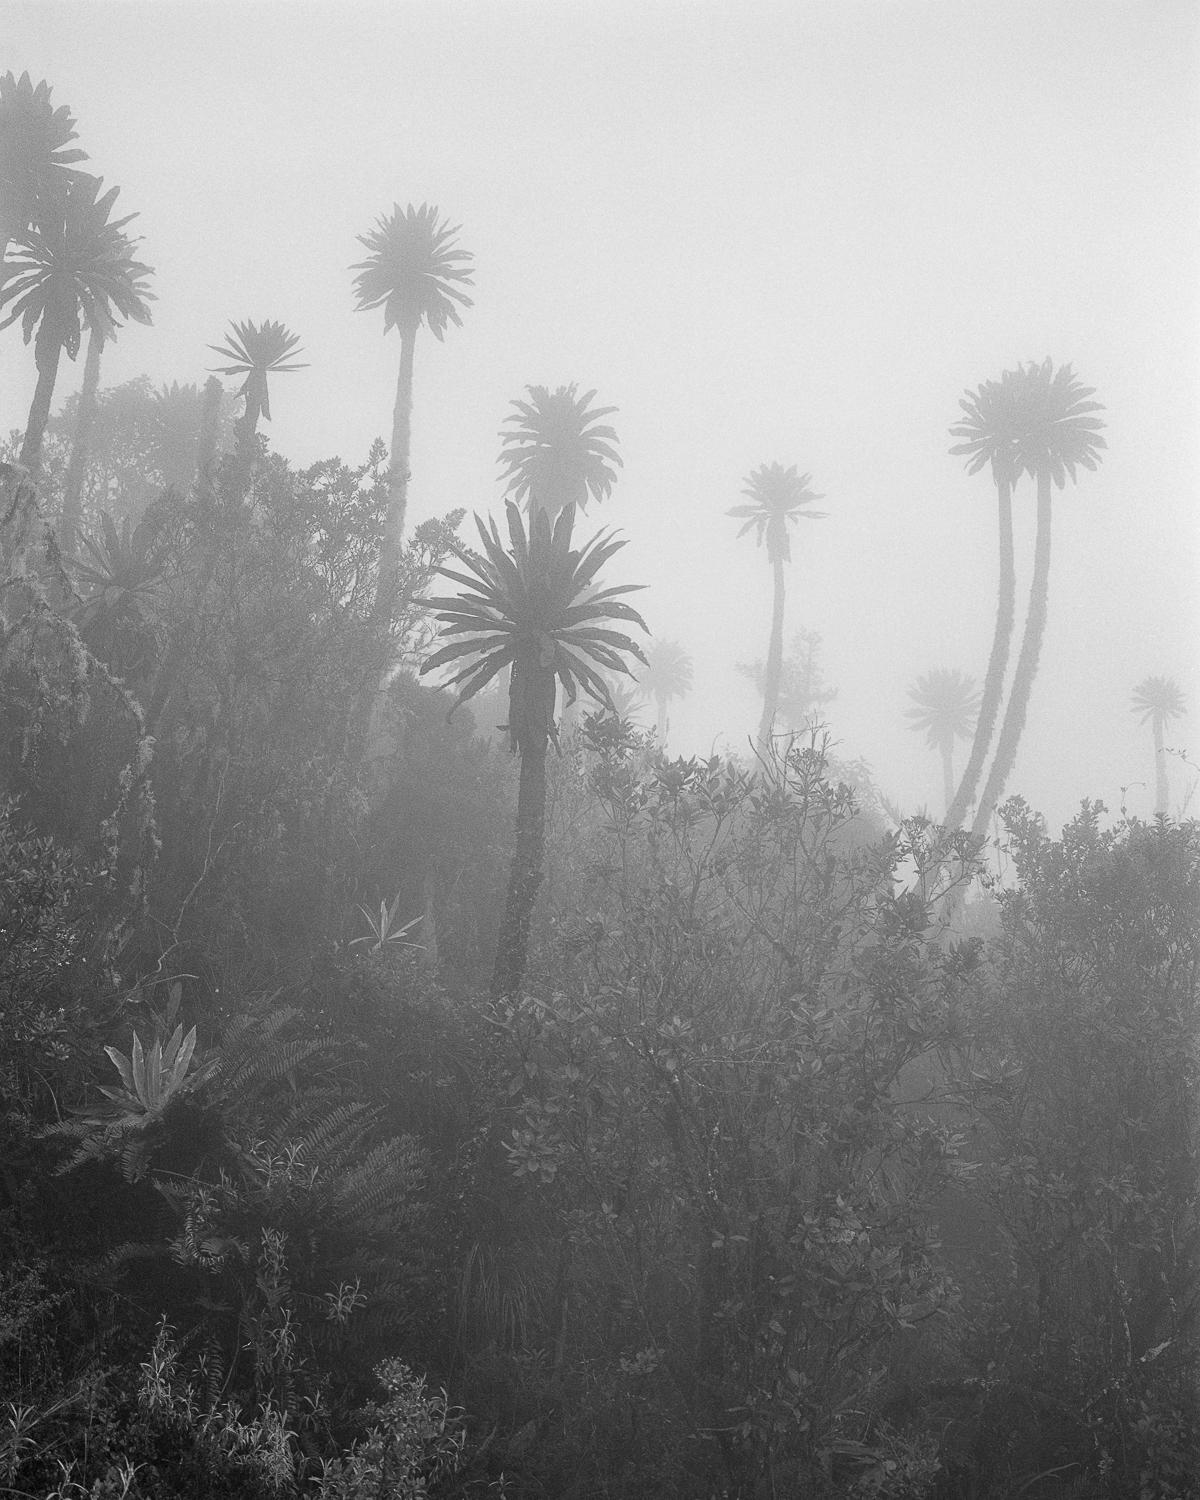 Black and White Photograph Miguel Winograd  - El Palmar en la Niebla Chingaza, imprimé pigmentaire